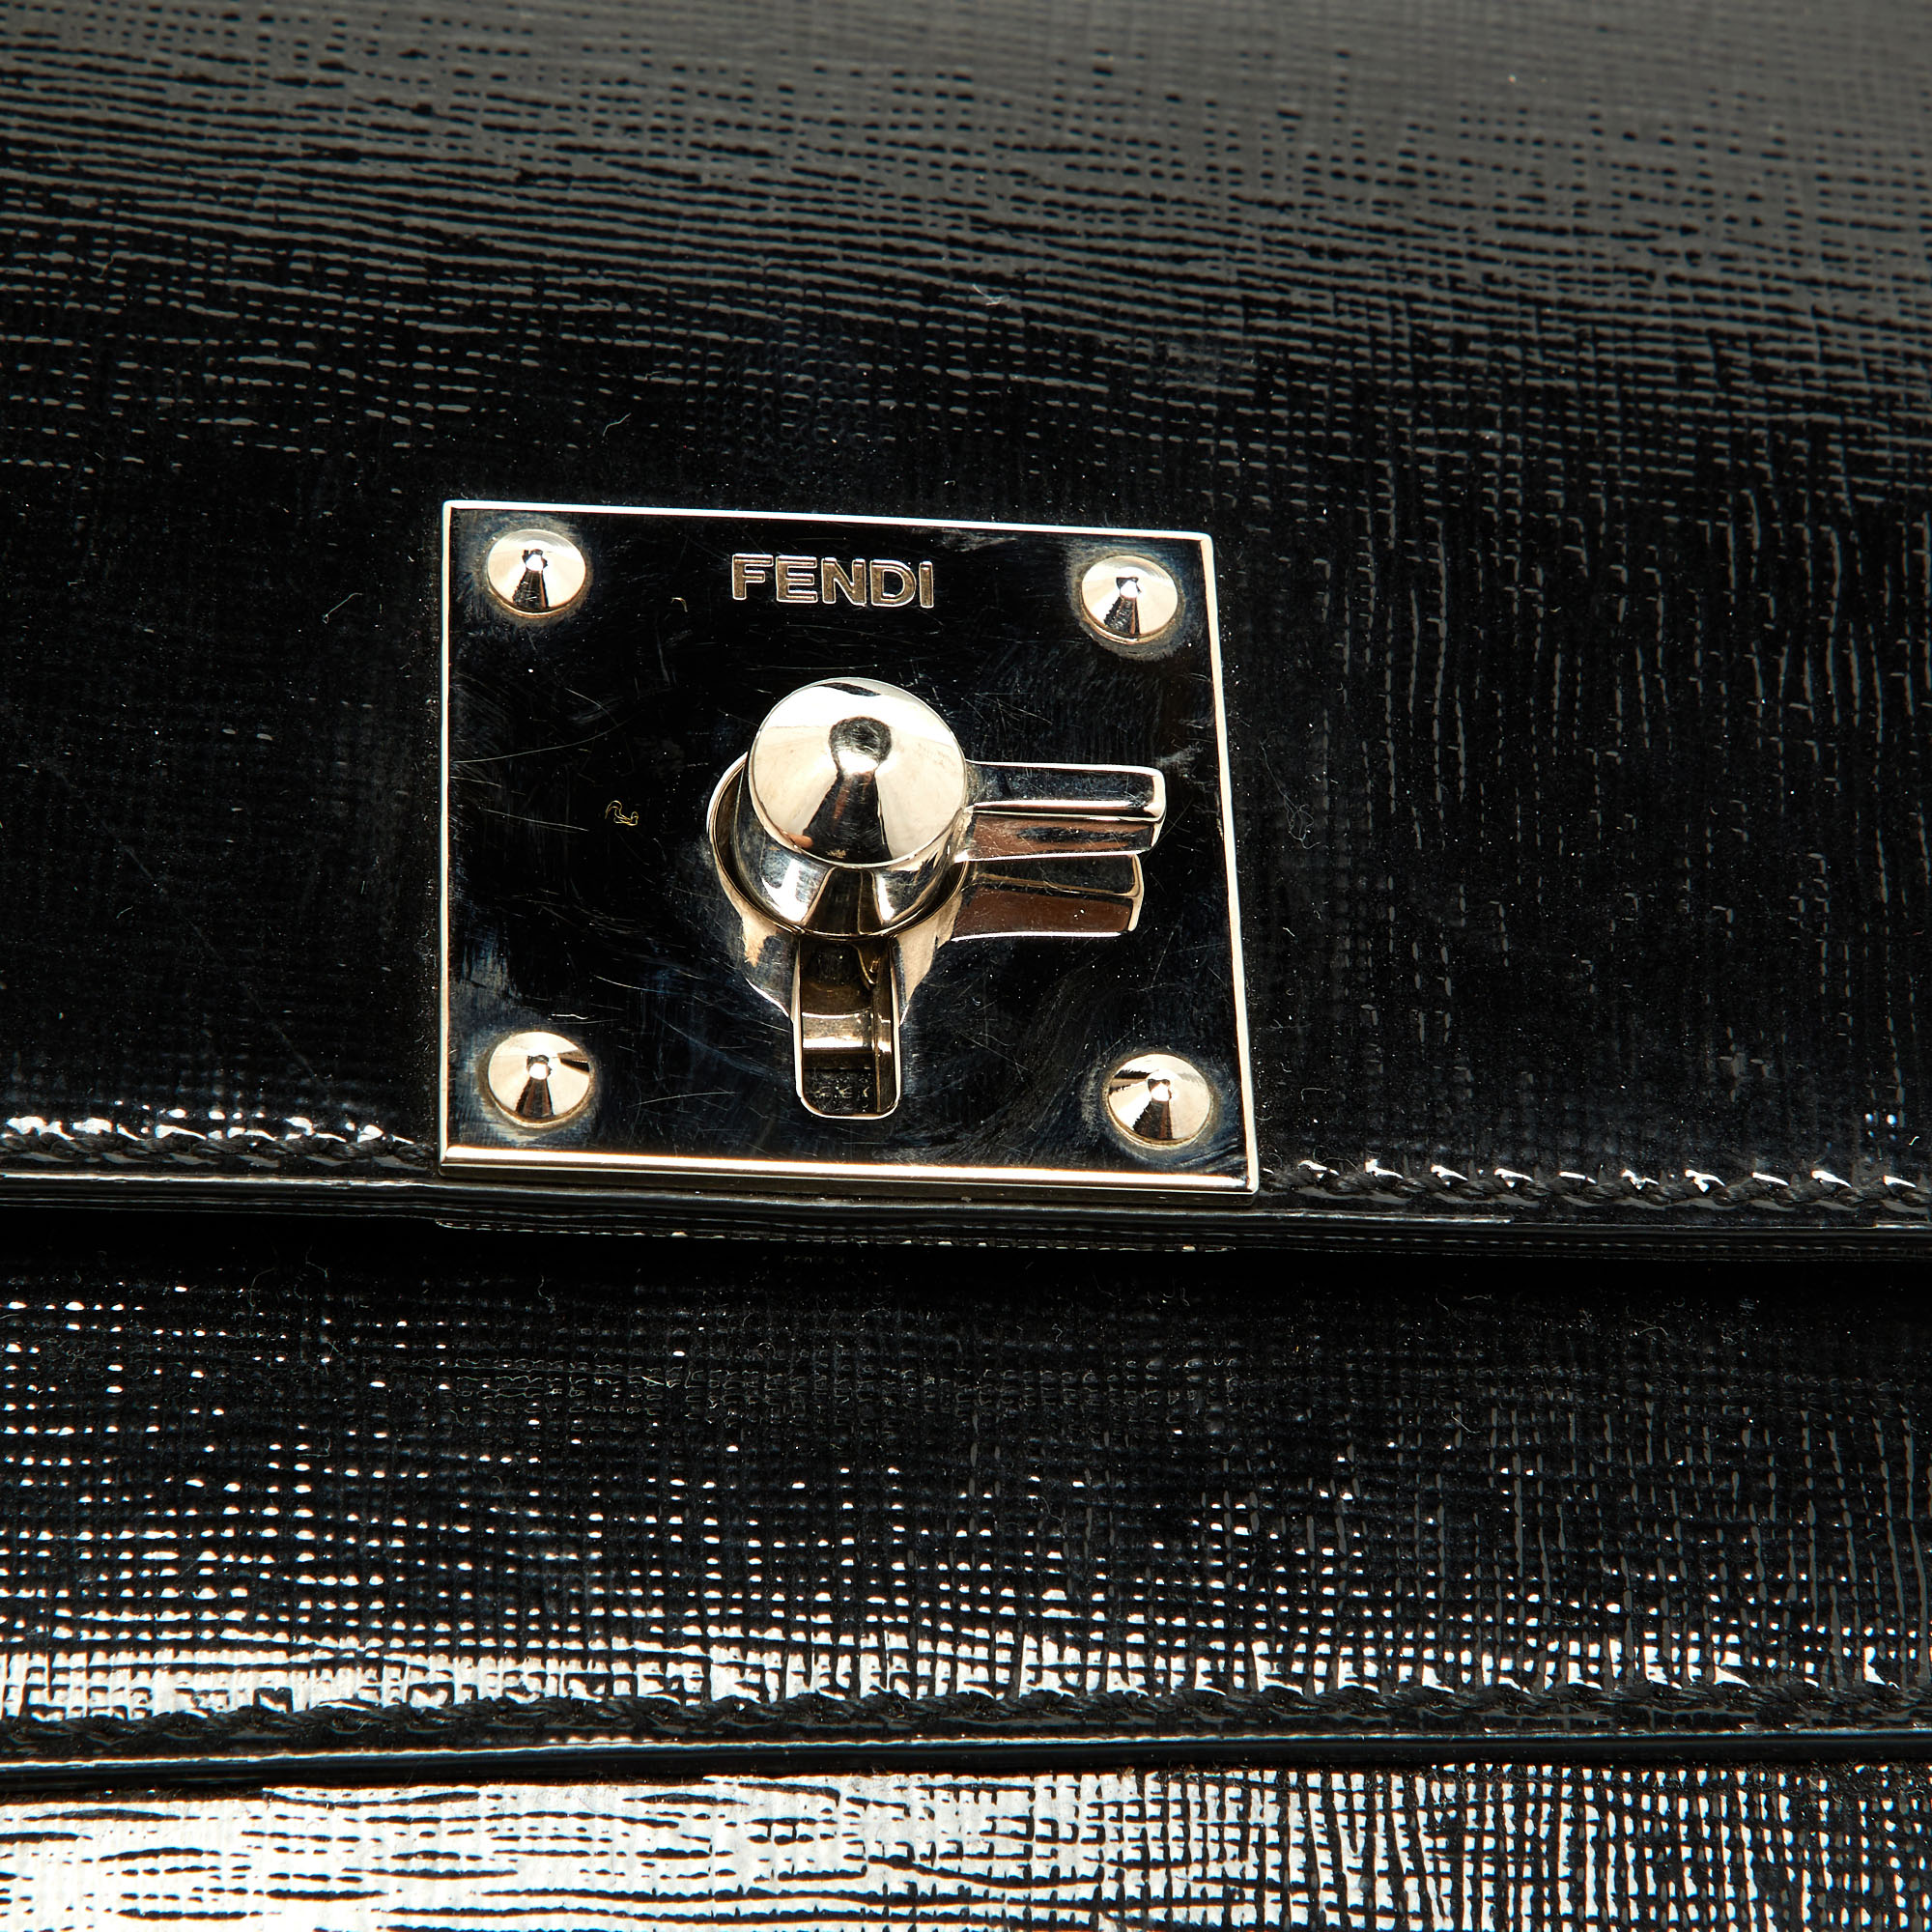 Fendi Black Patent Leather Mini Borsa Top Handle Bag